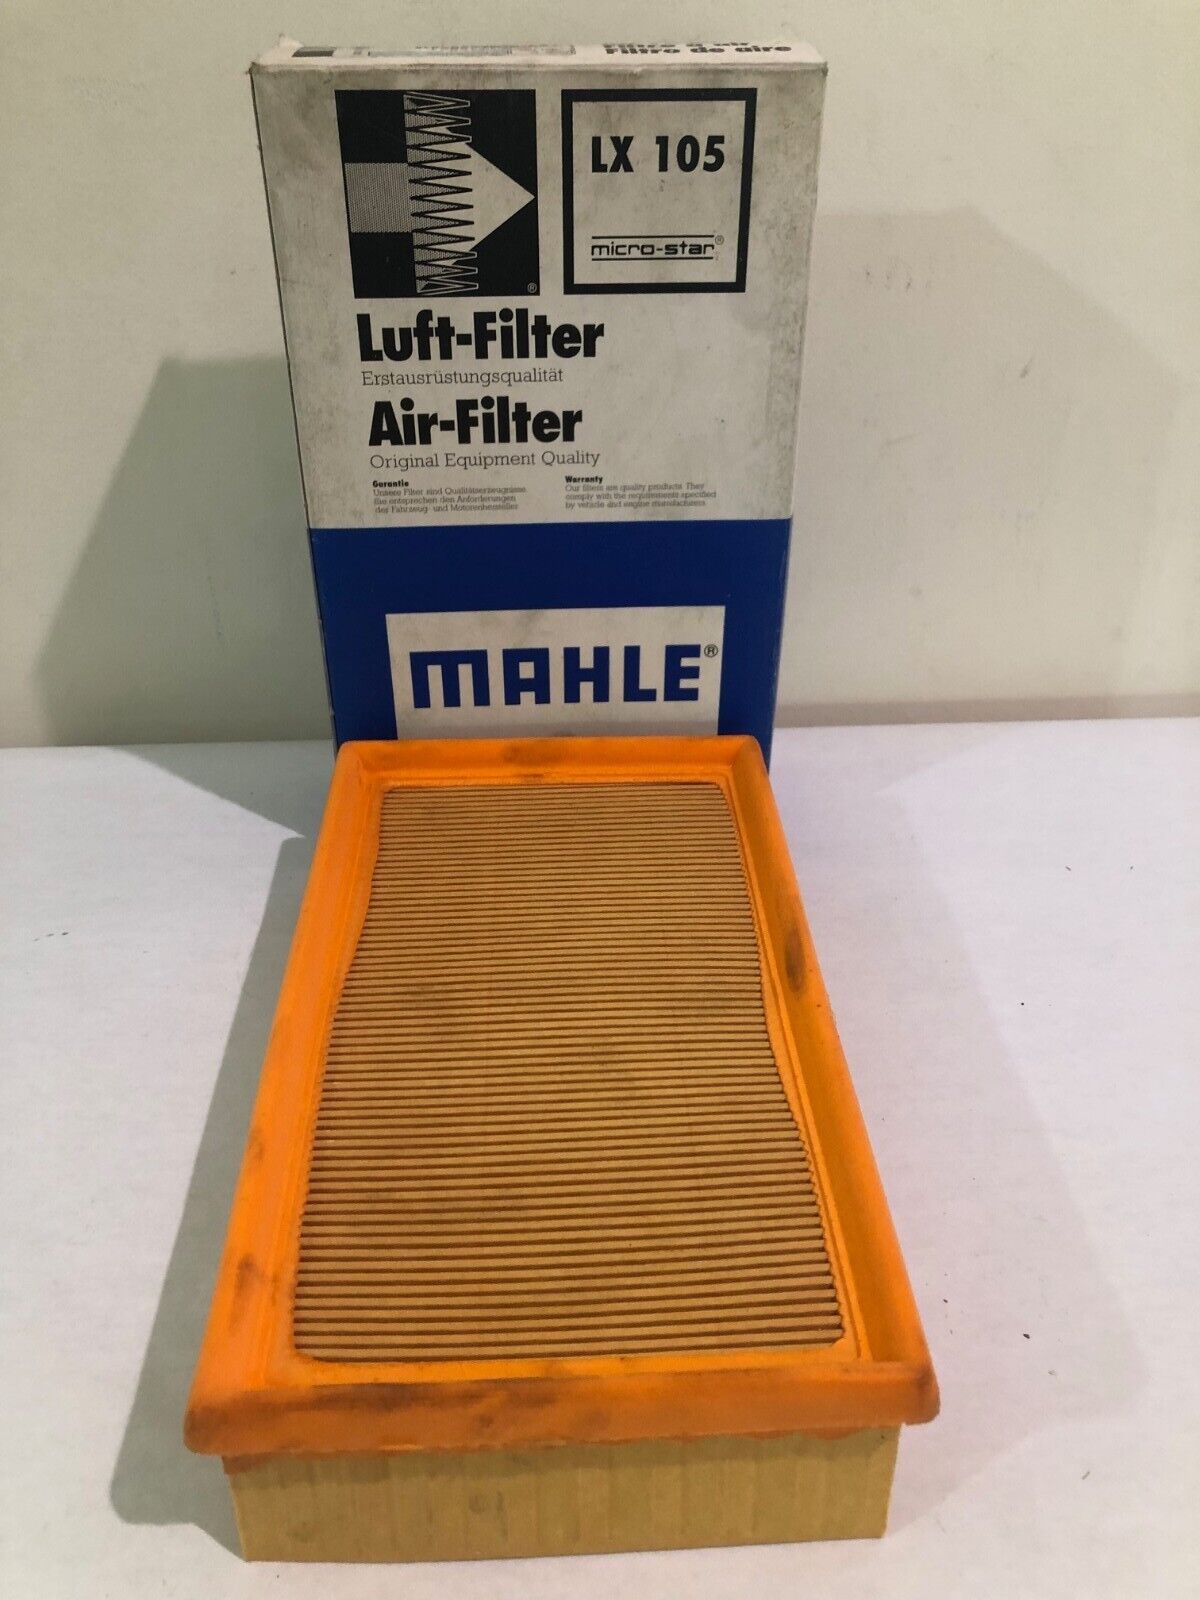 Mahle LX105 Air Filter Fits BMW 318i 318is 325 325e 325i 525i 750iL 850Ci 850i